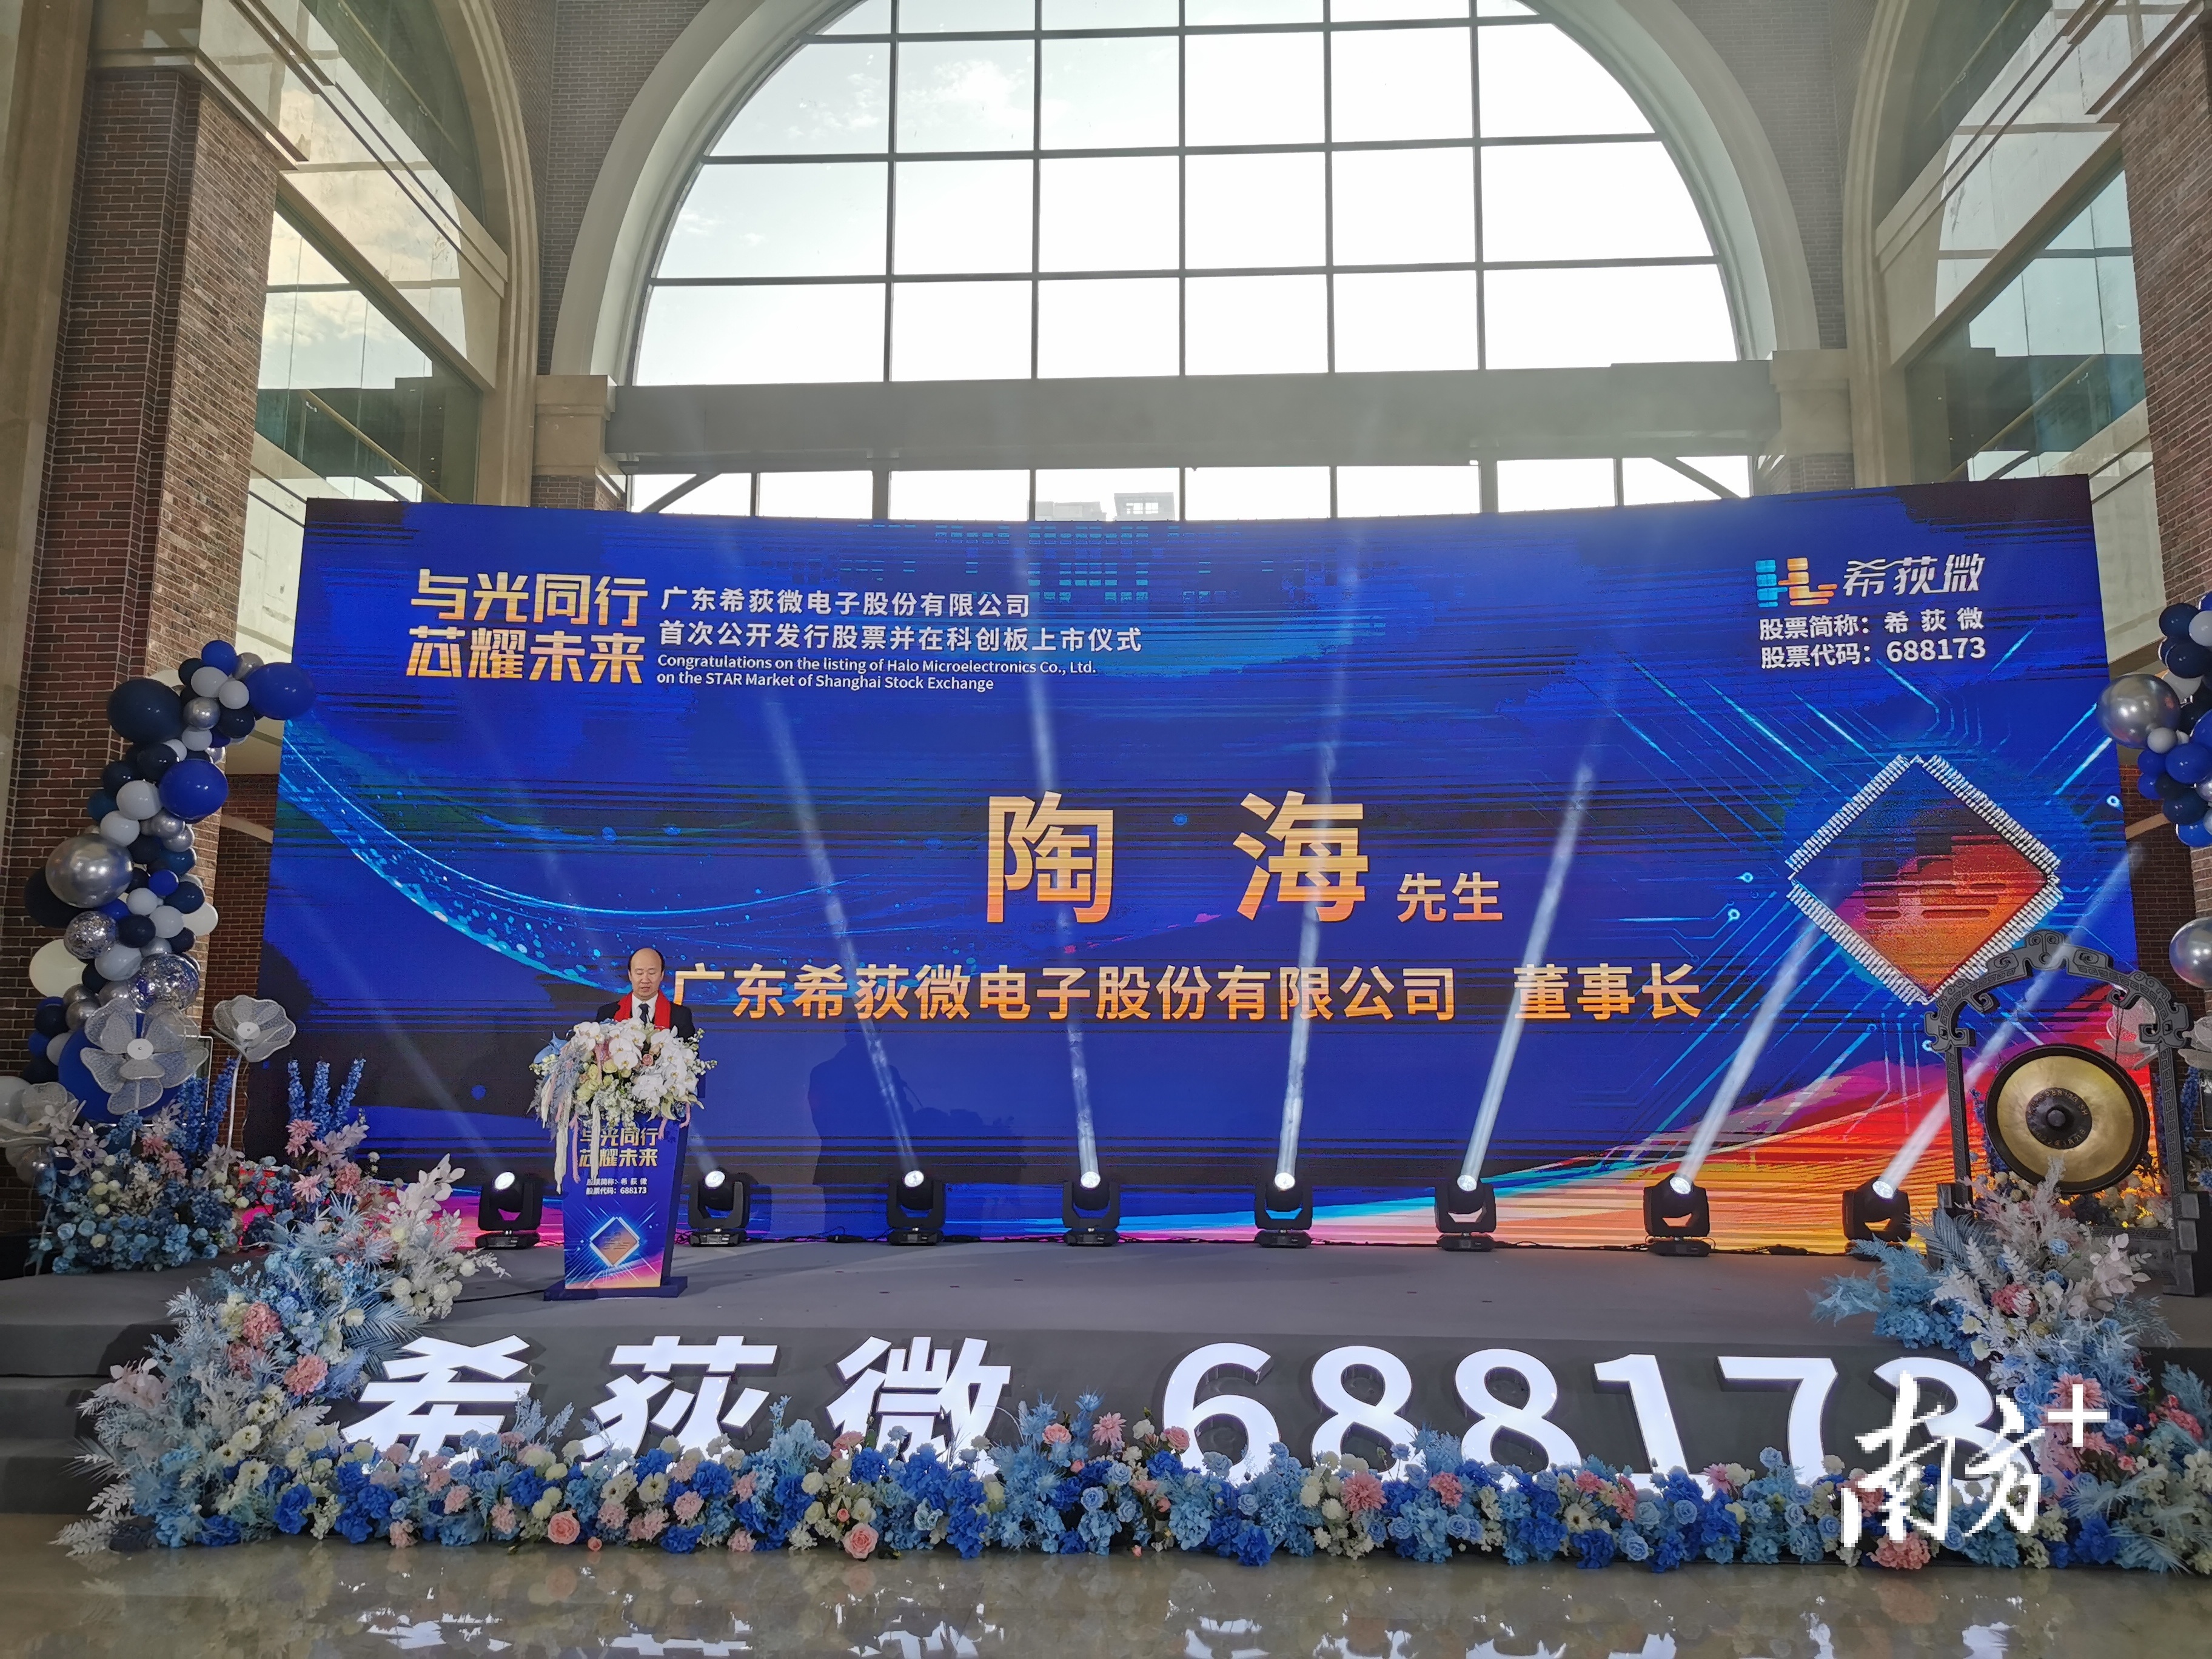 广东希荻微电子股份有限公司在上海证券交易所科创板正式上市。 李源 摄